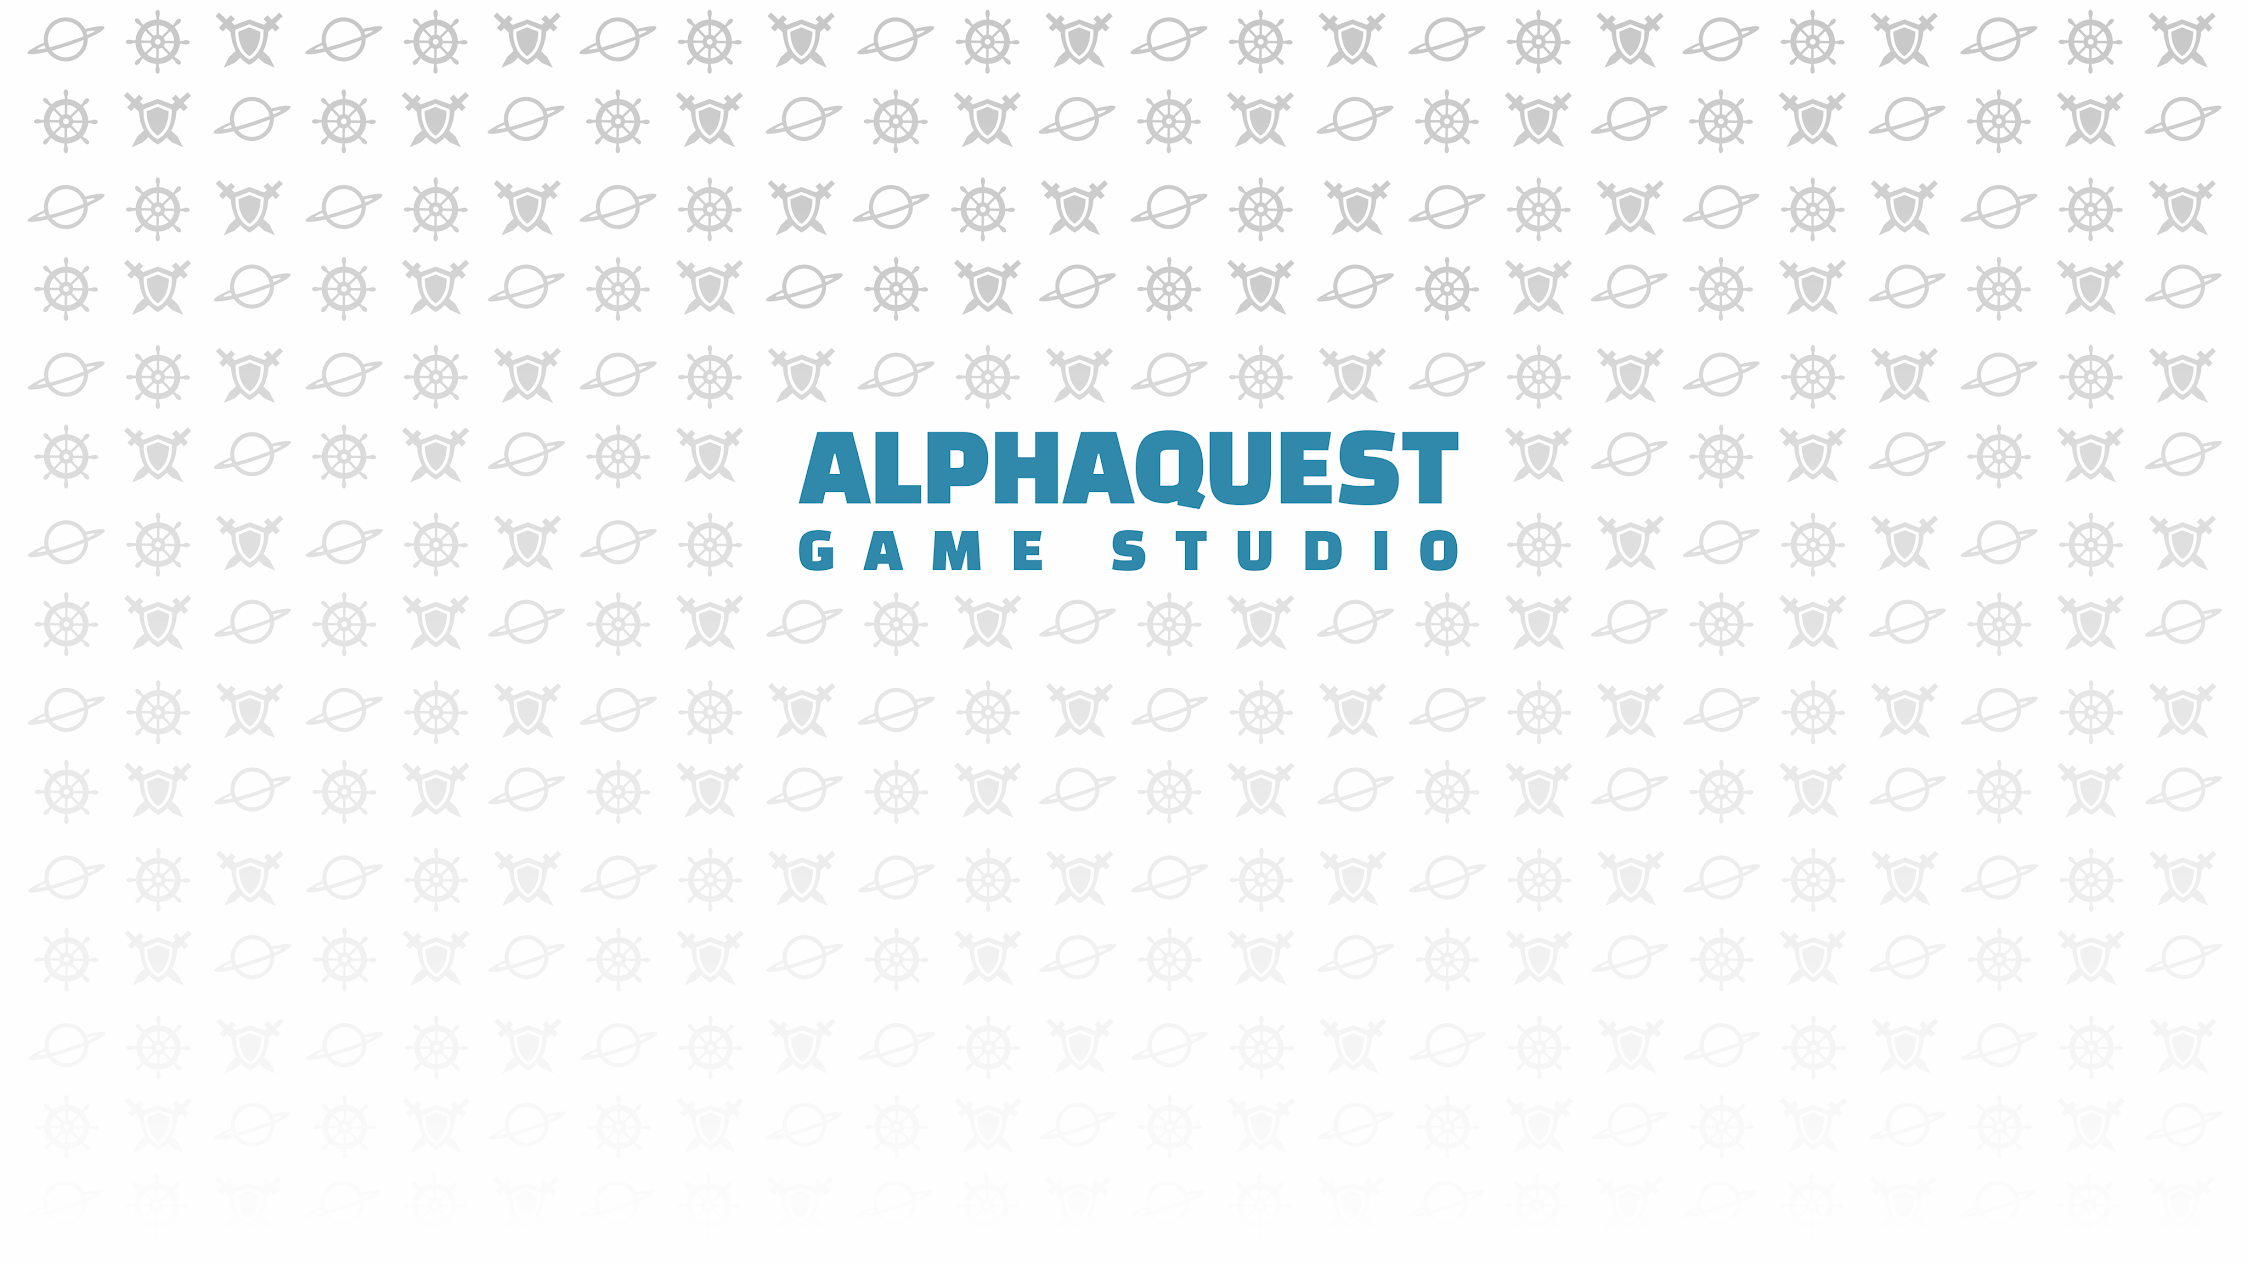 Alphaquest Game Studio